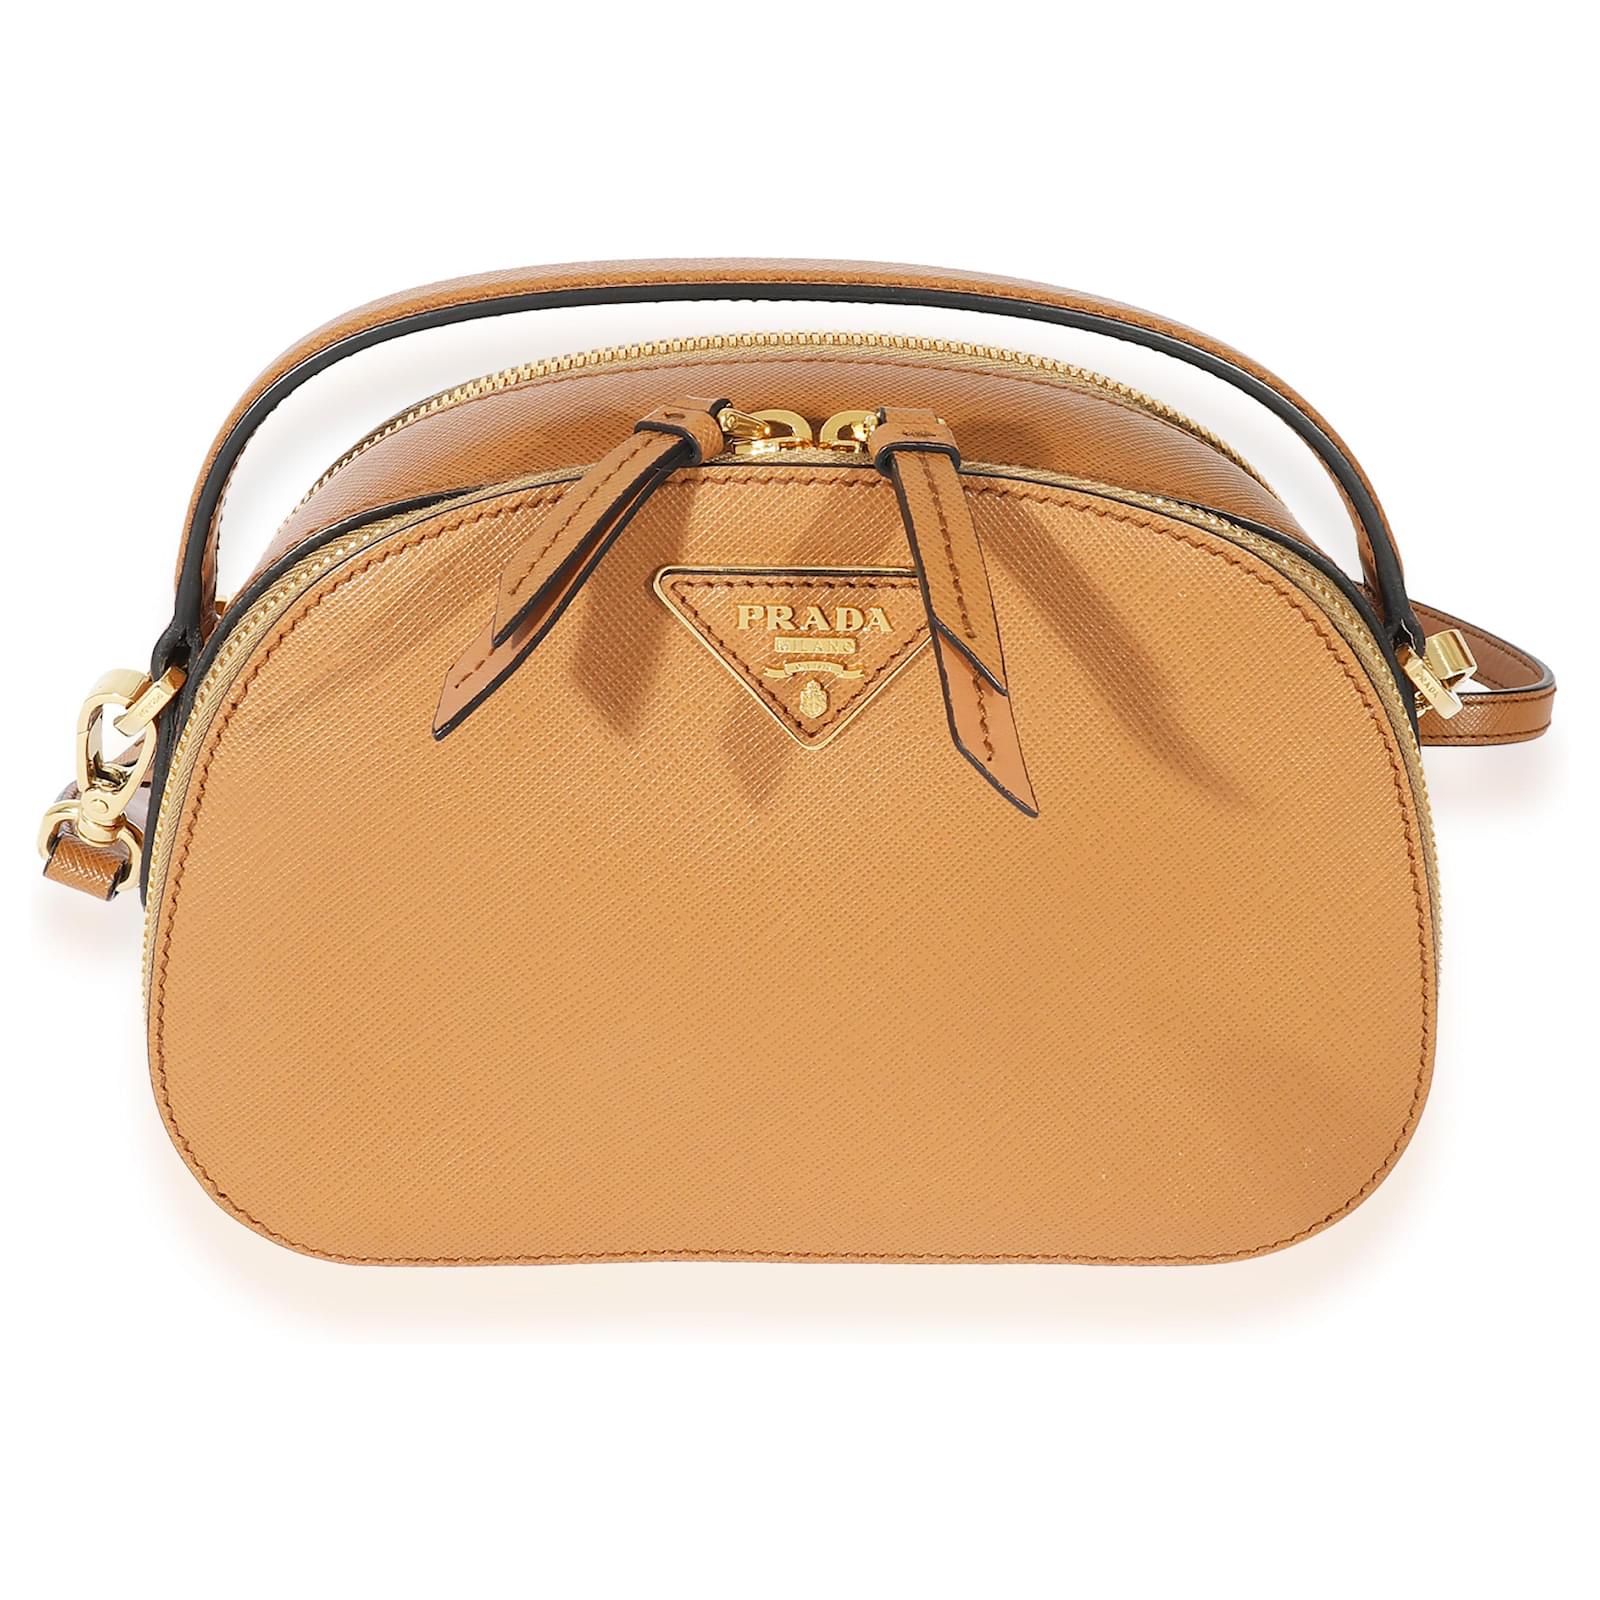 Odette leather handbag